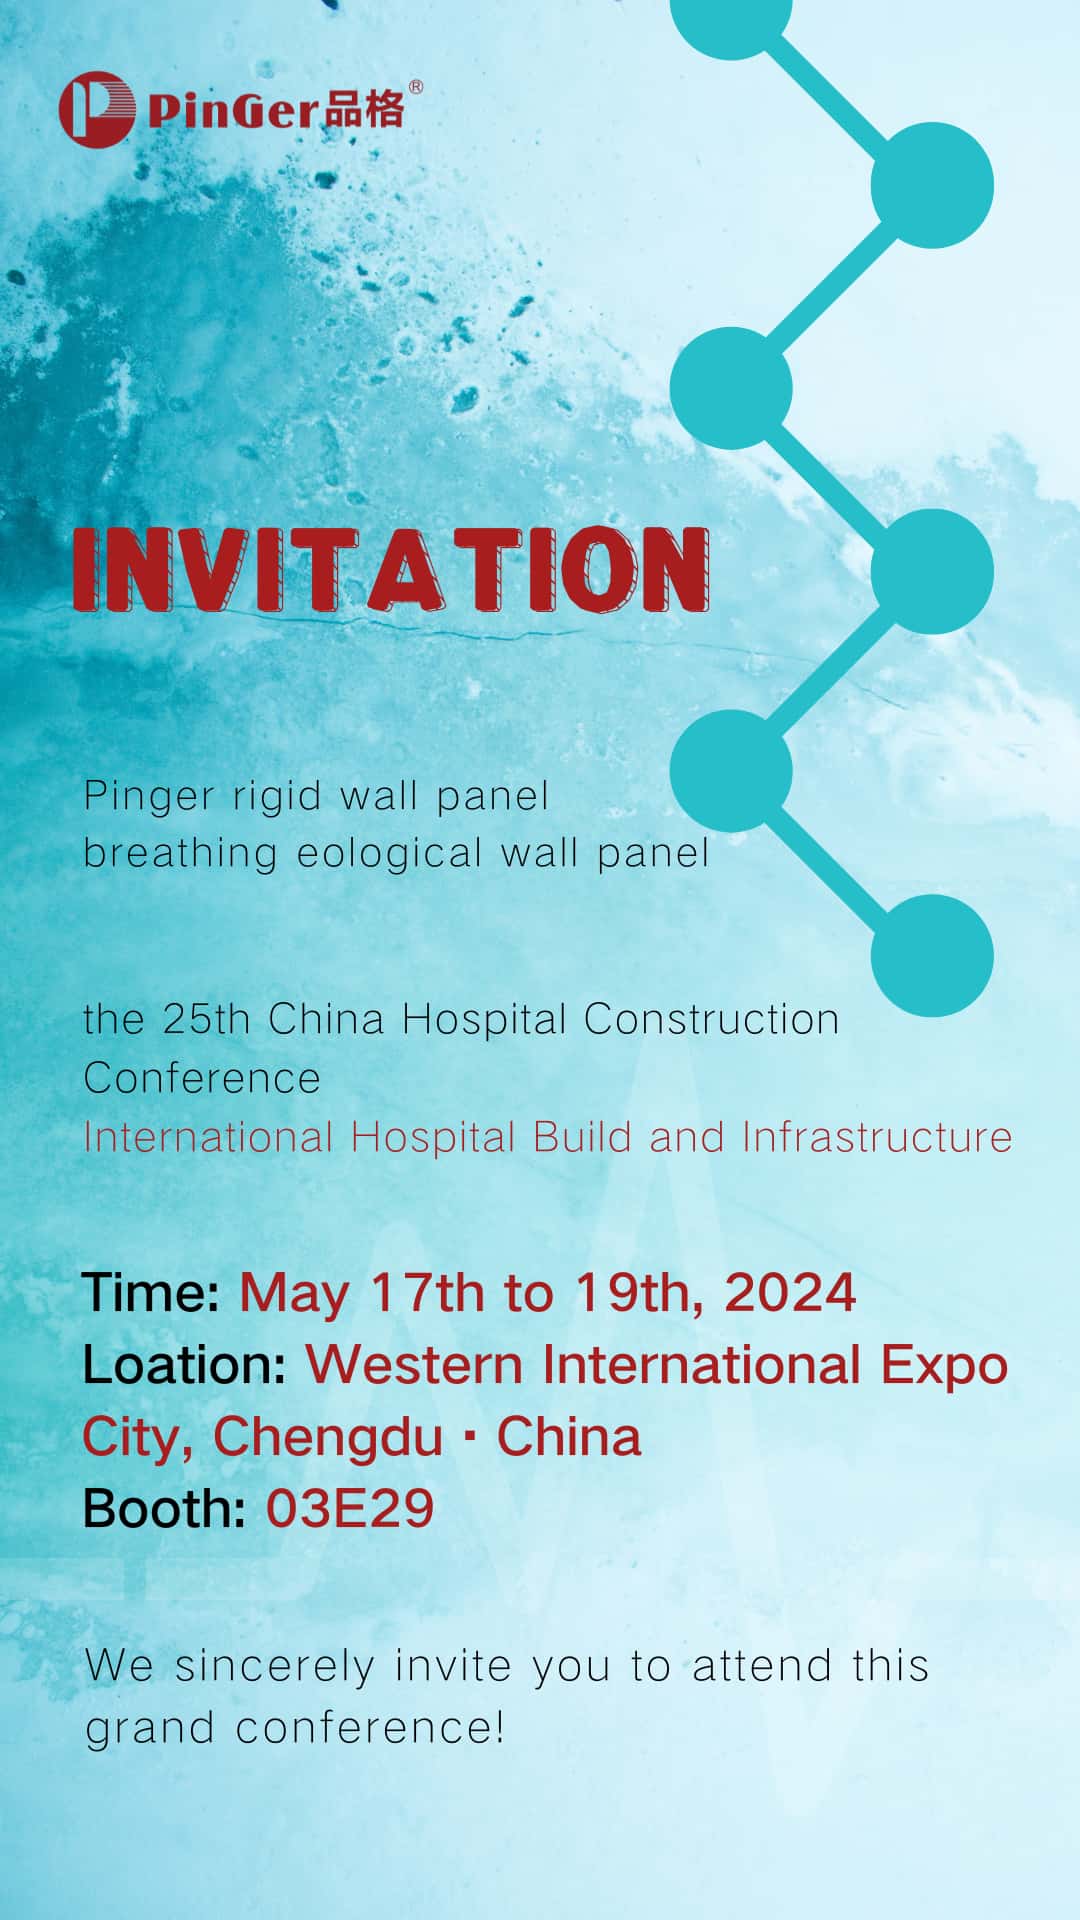 Exhibition Invitation | Pinger invite you to CHCC2024